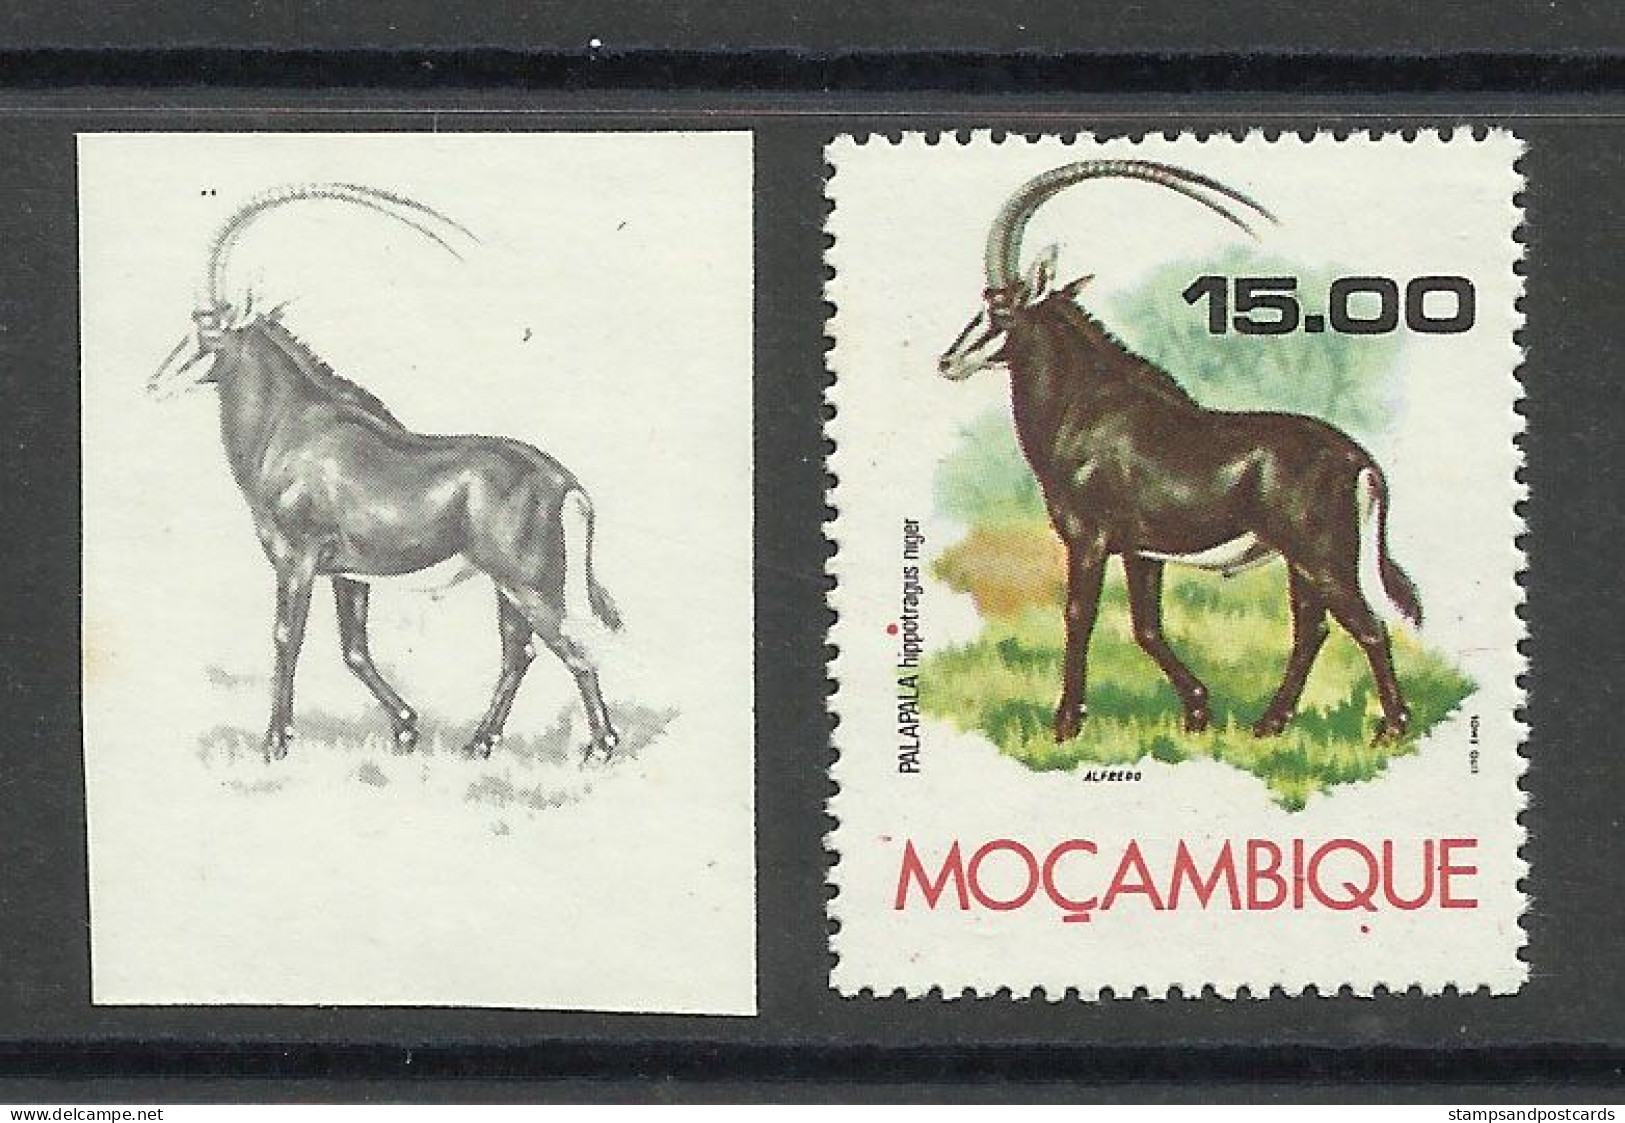 Mozambique 1976 Preuve De Couleur Hippotrague Noir Moçambique 1976 Color Proof Sable Antelope - Rhinozerosse